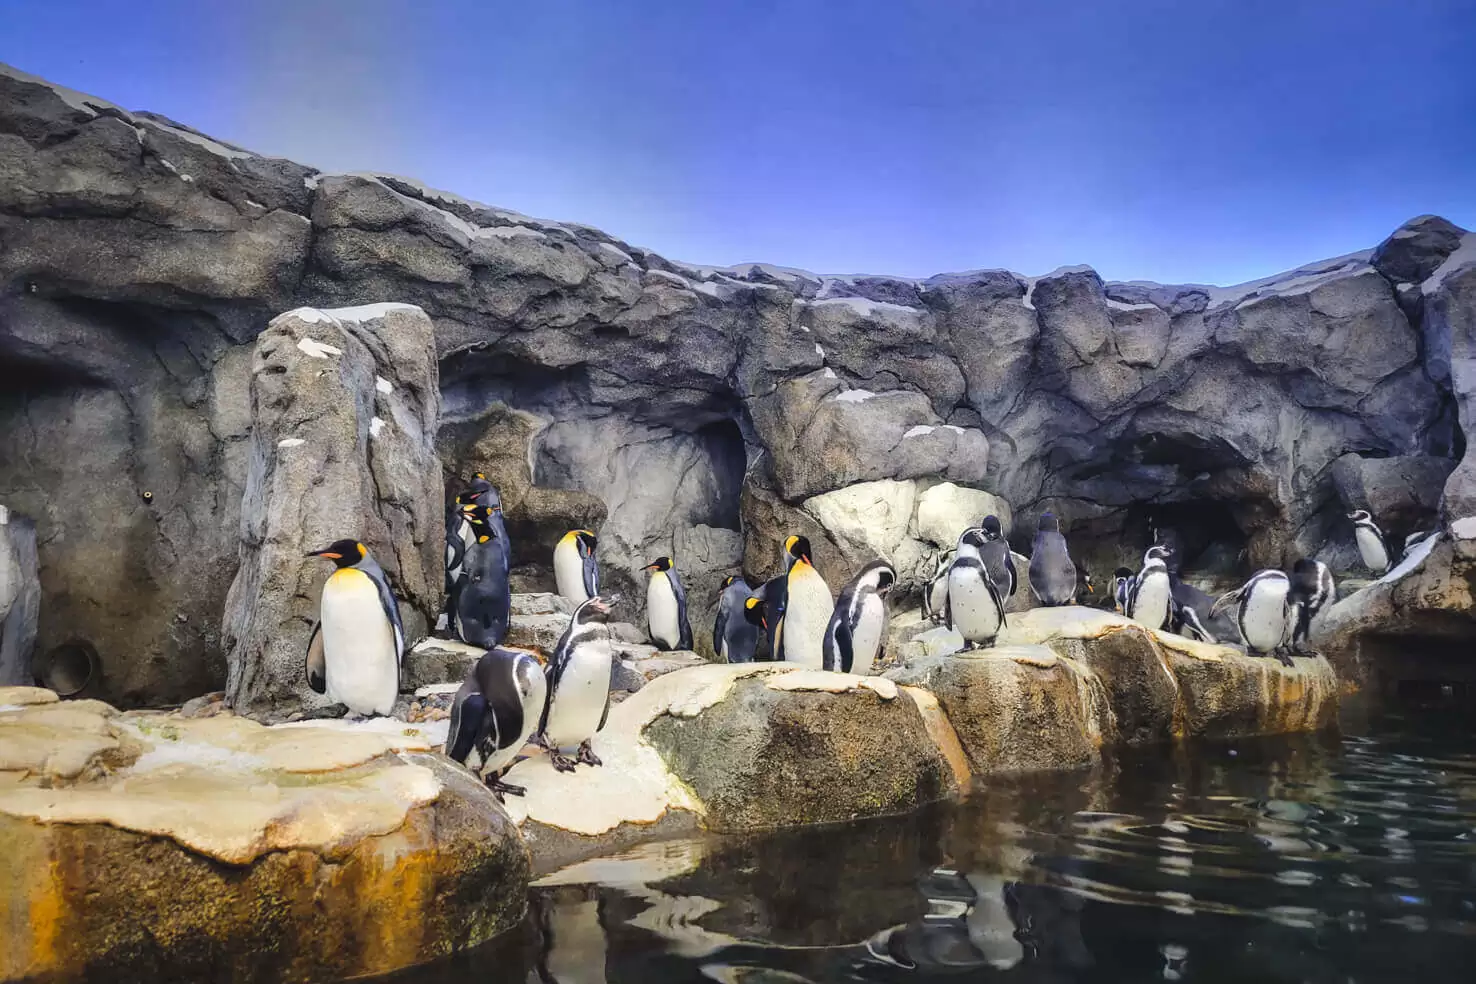 Penguins at Calgary Zoo